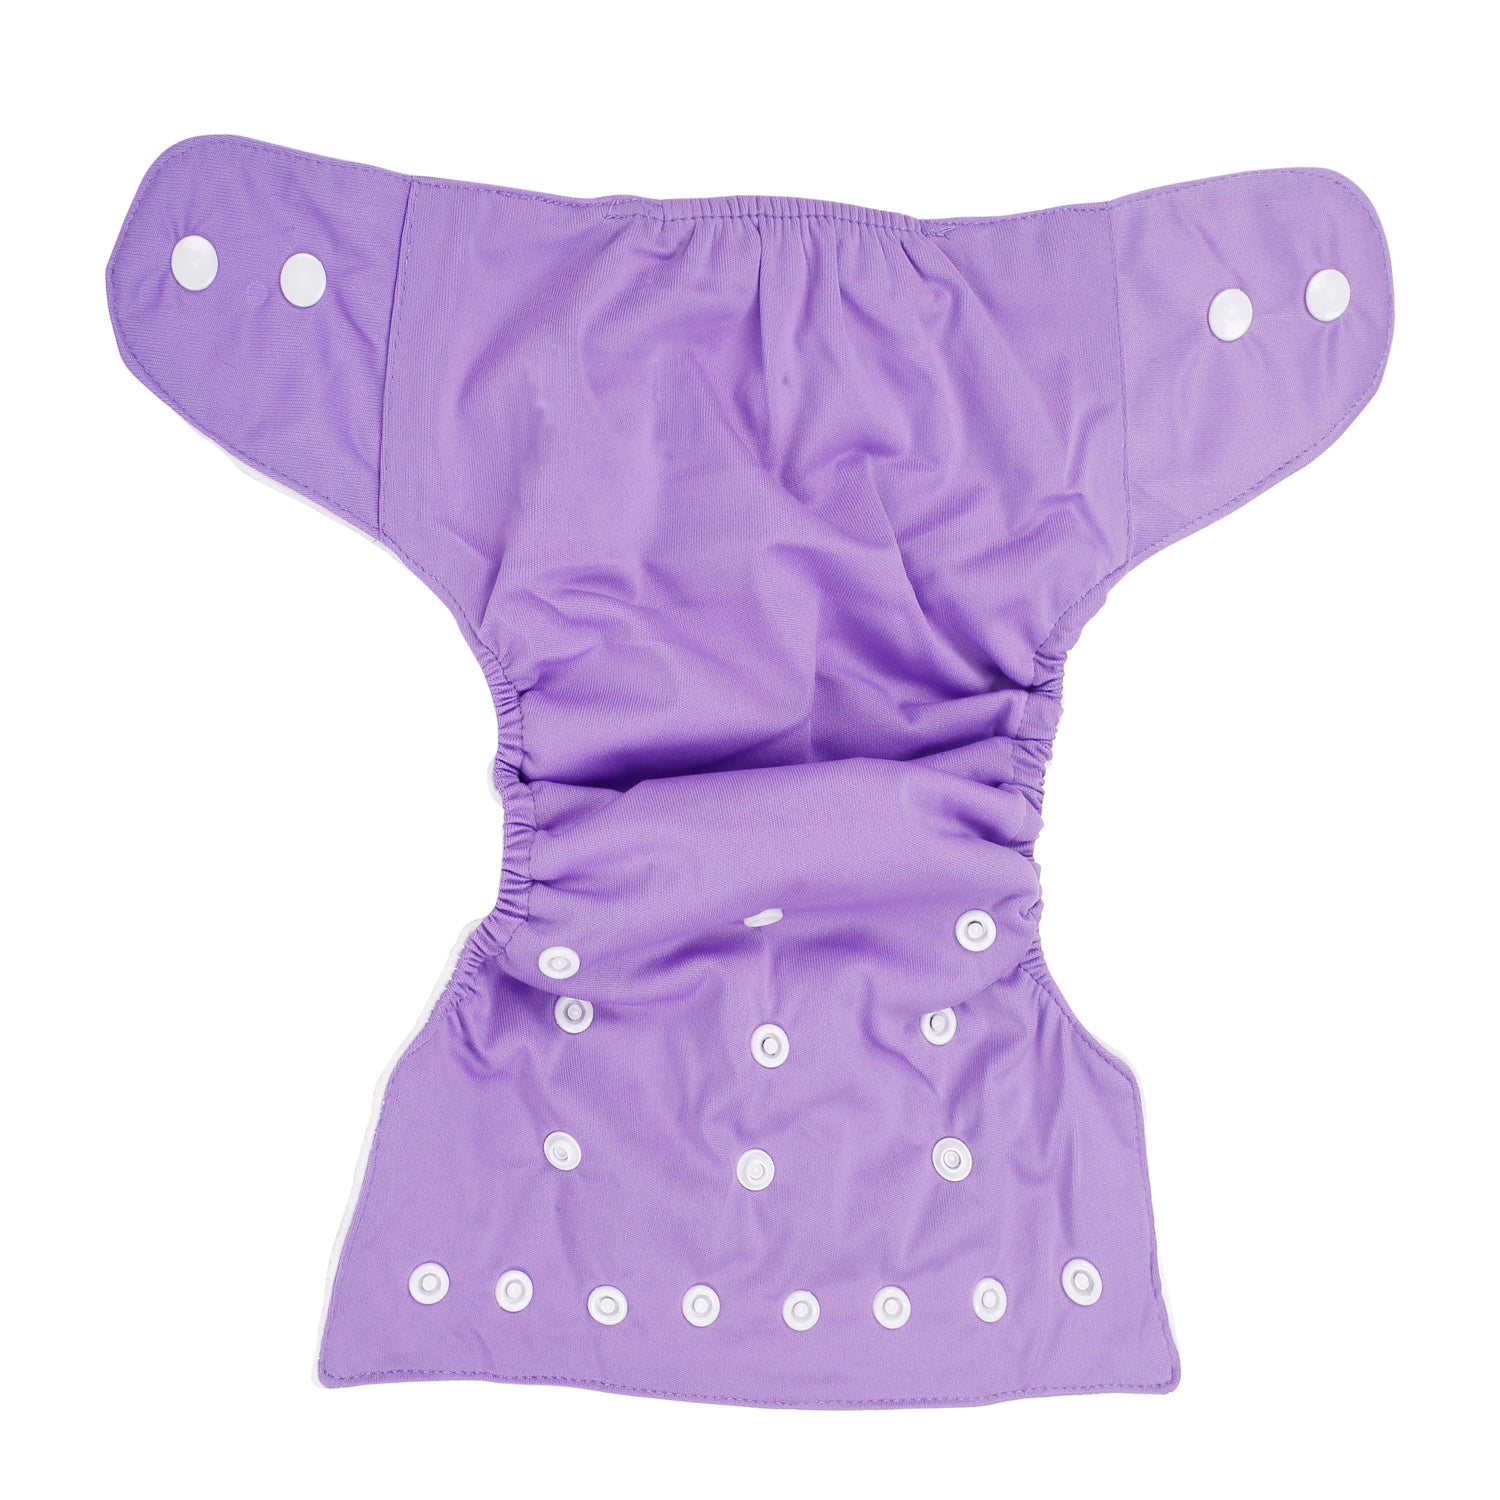 Plain Purple Reusable Diaper